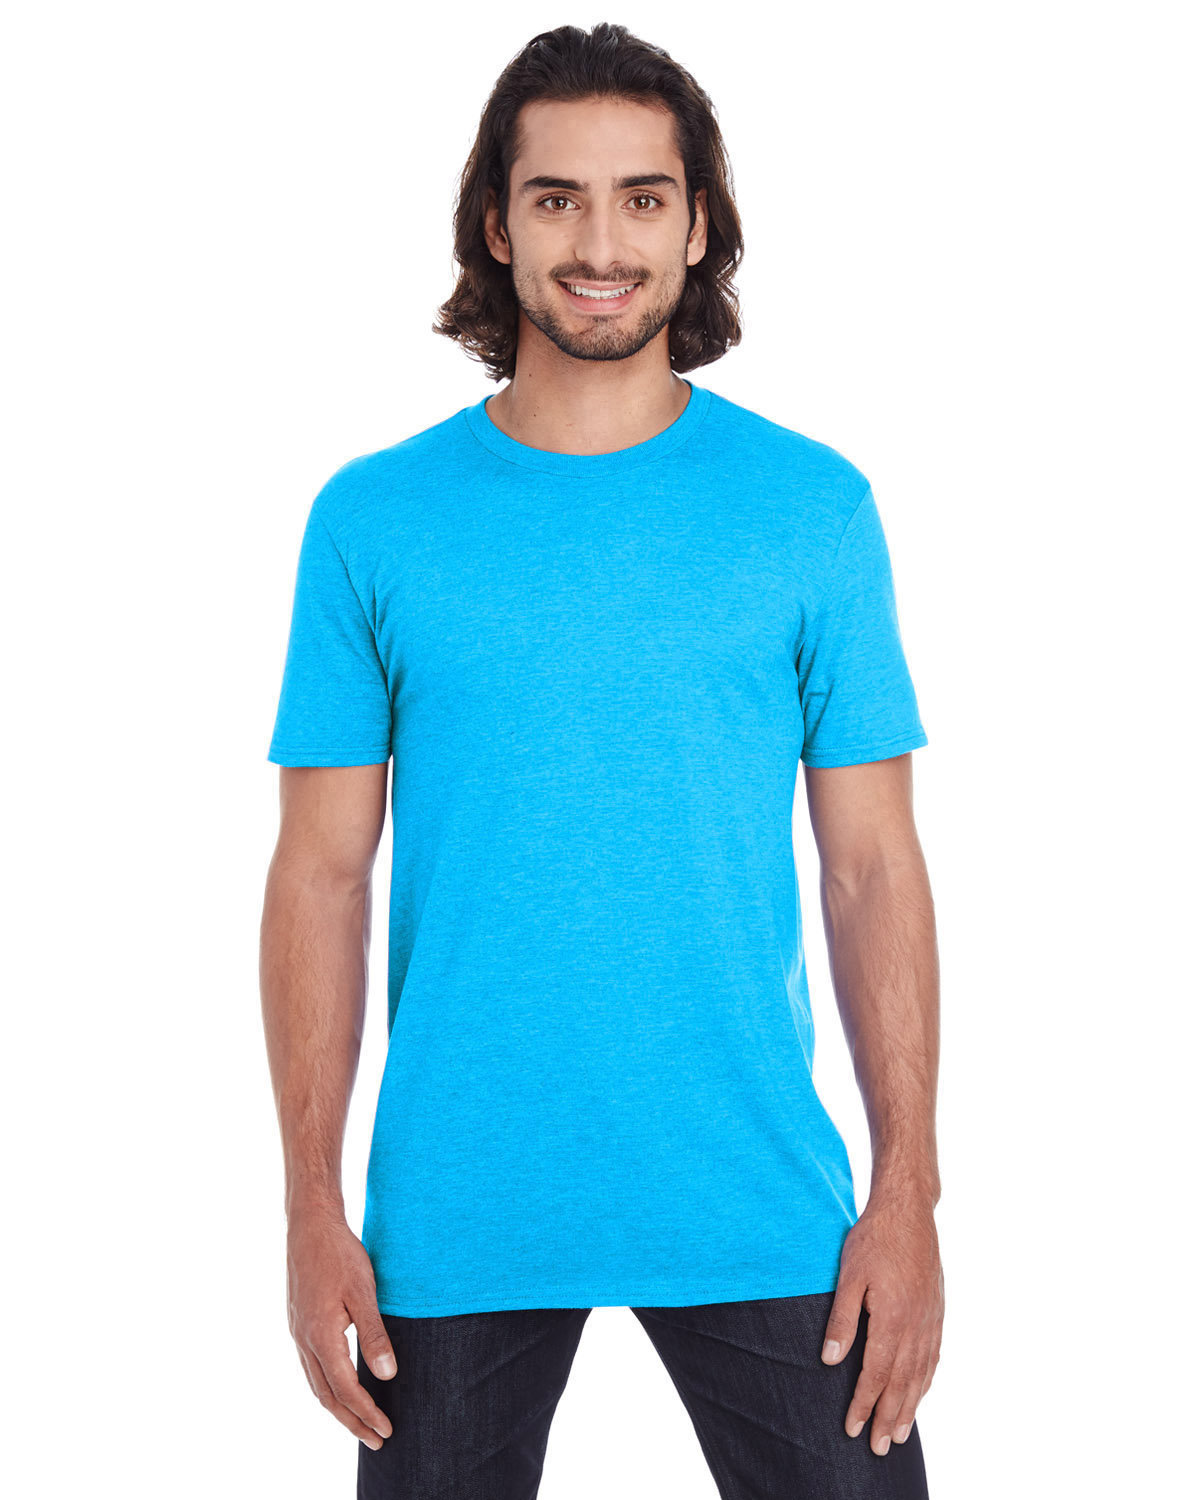 Gildan Lightweight T-Shirt HTHR CARIB BLUE 